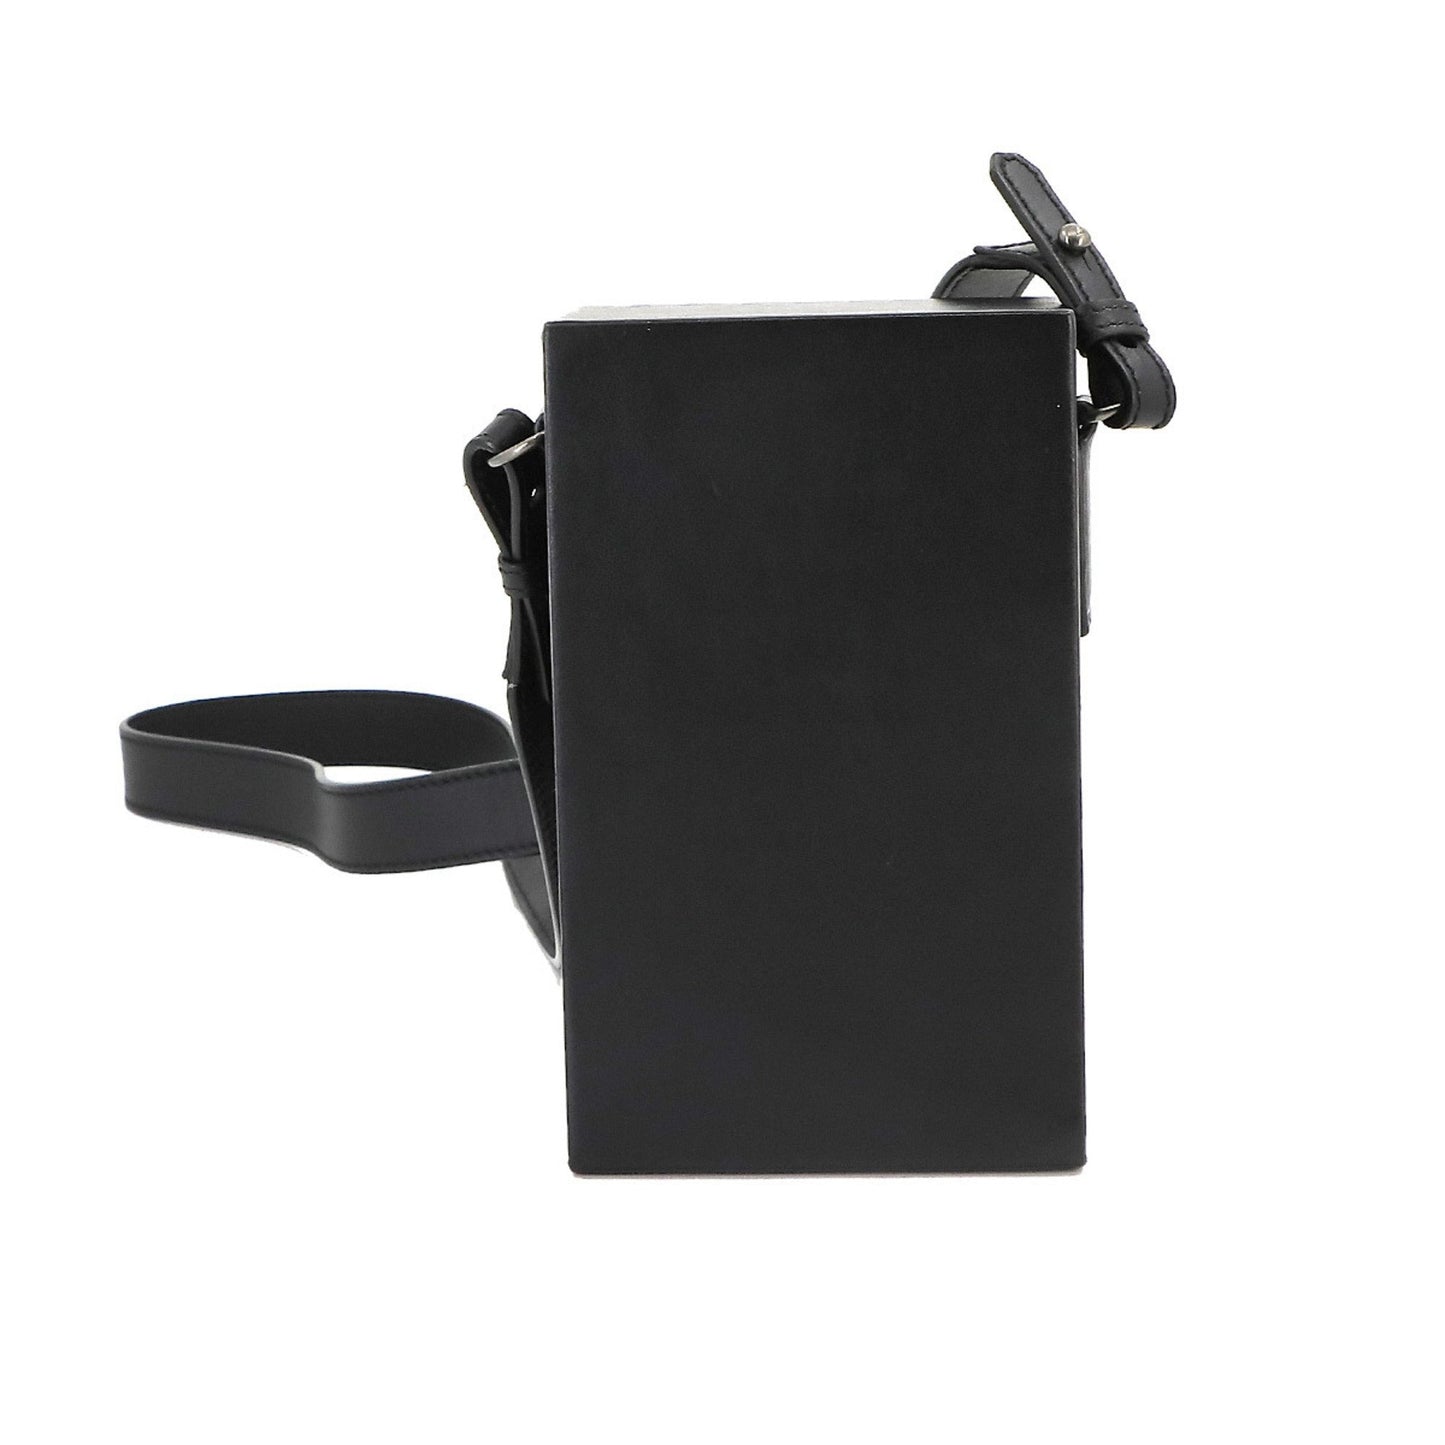 Fendi Unisex Black Leather Shoulder Bag in Black